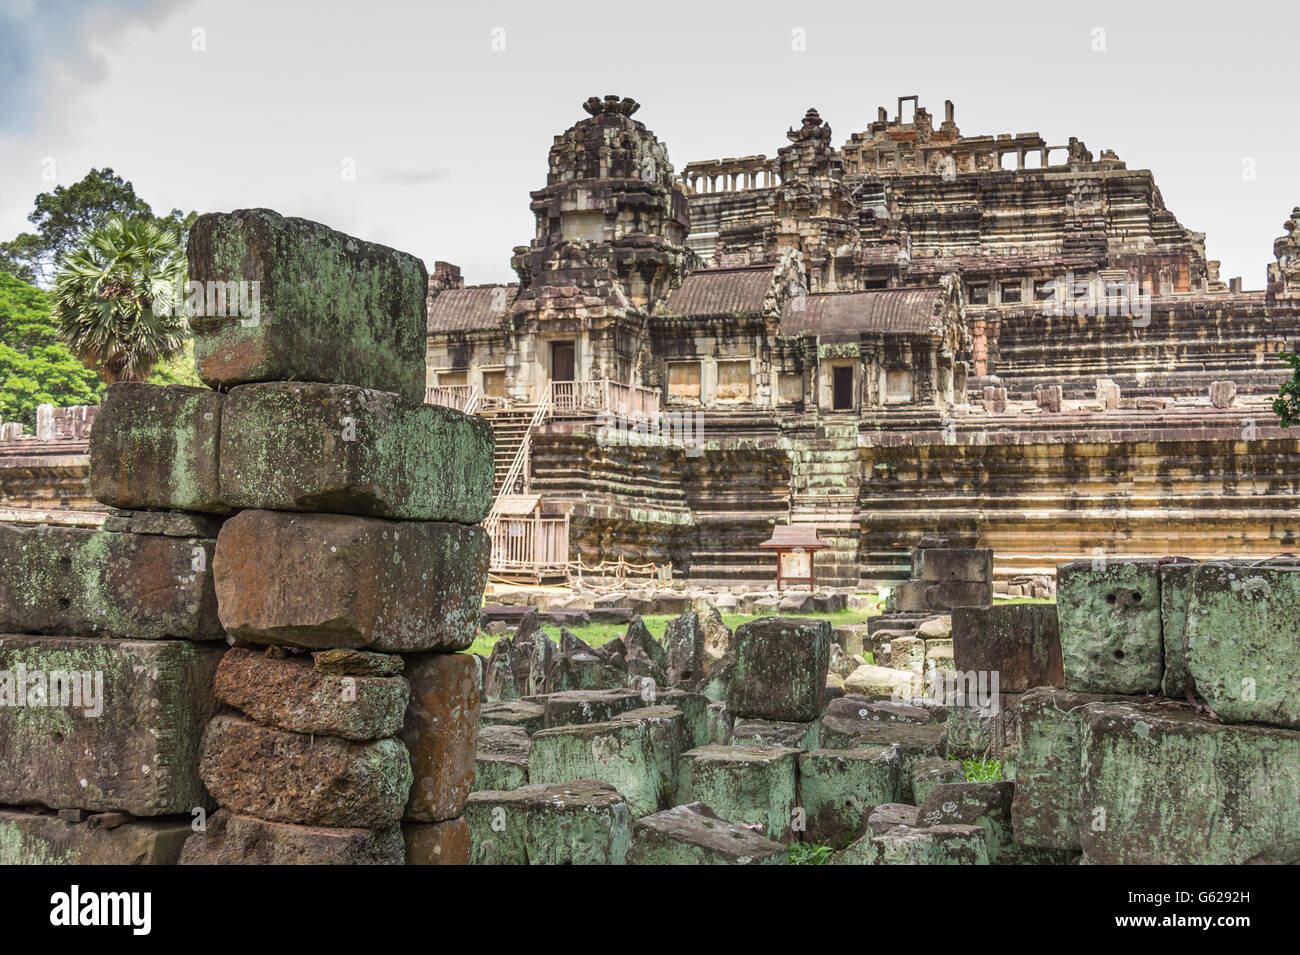 Les ruines de temples Angkor au Cambodge Banque D'Images